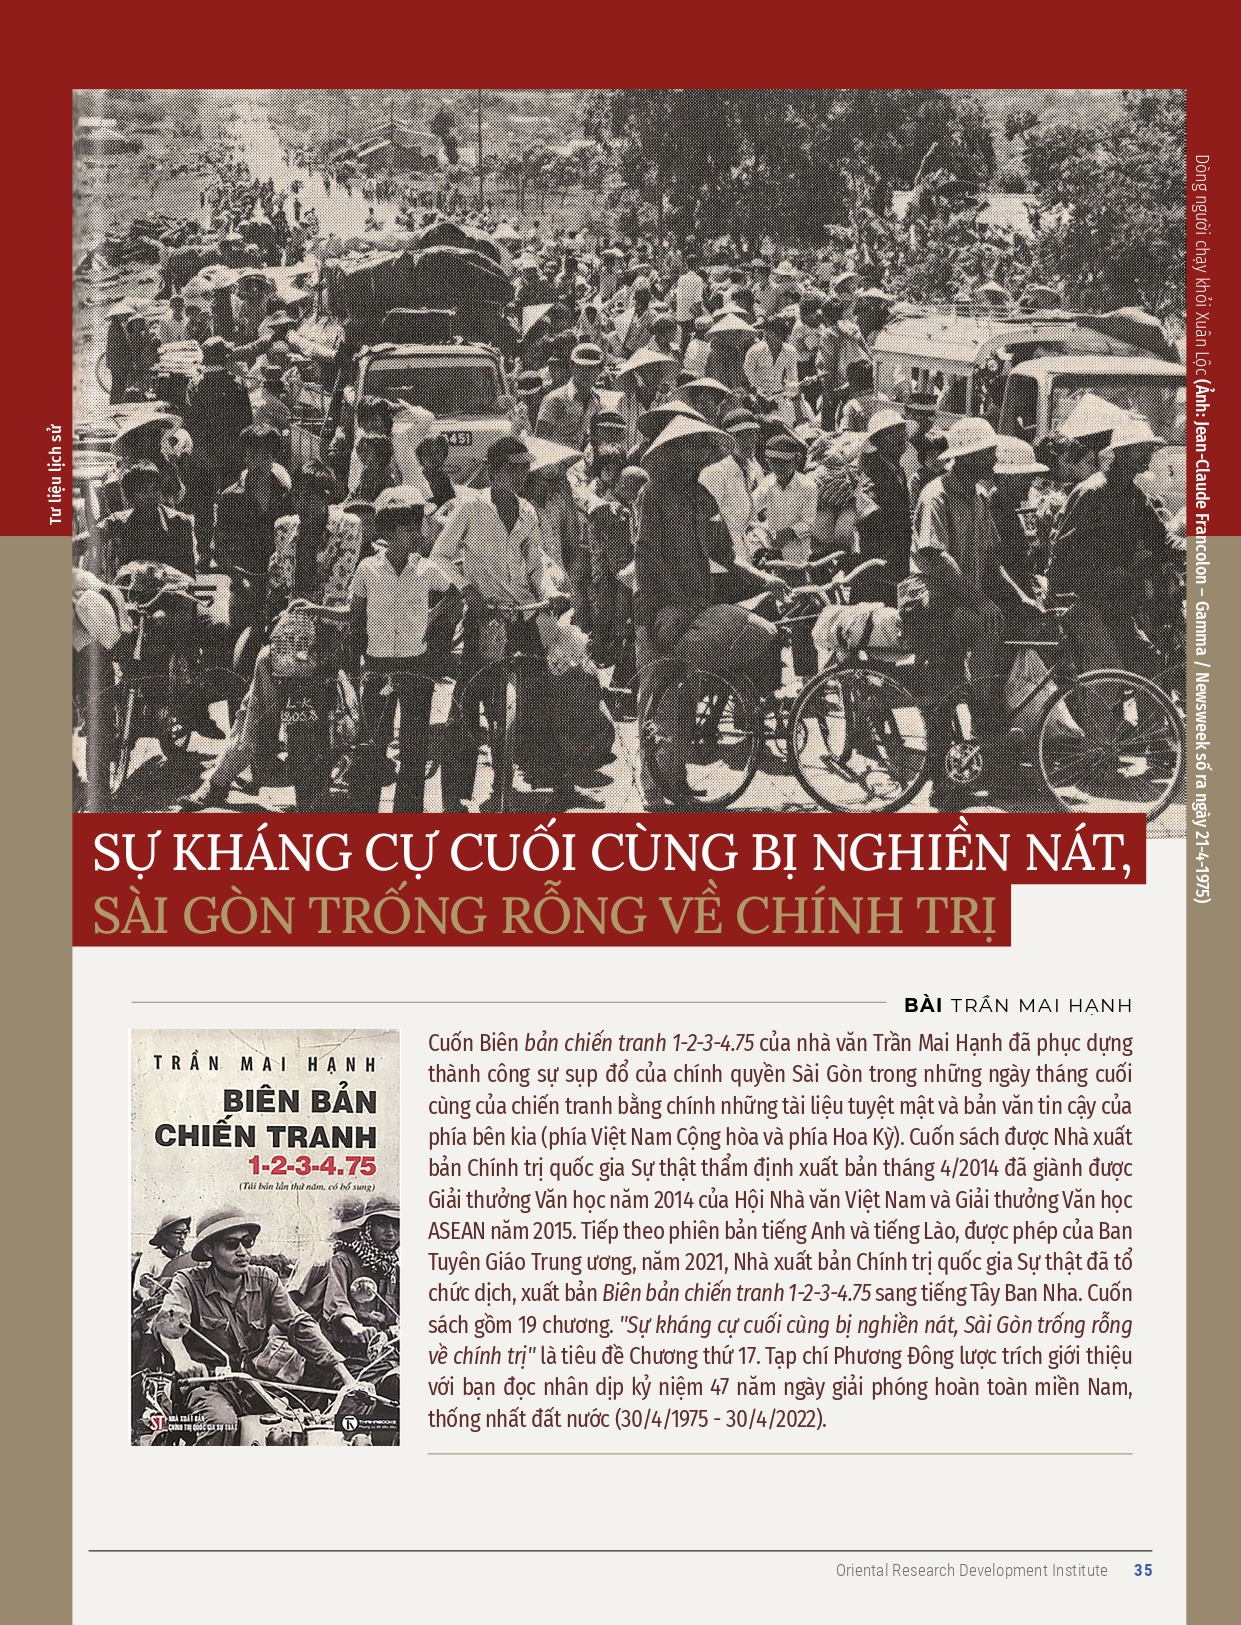 Kỷ niệm 47 năm giải phóng miền Nam, thống nhất đất nước (30/4/1975 - 30/4/2022): Những ngày sụp đổ cuối cùng của Việt Nam Cộng hoà - Ảnh 1.